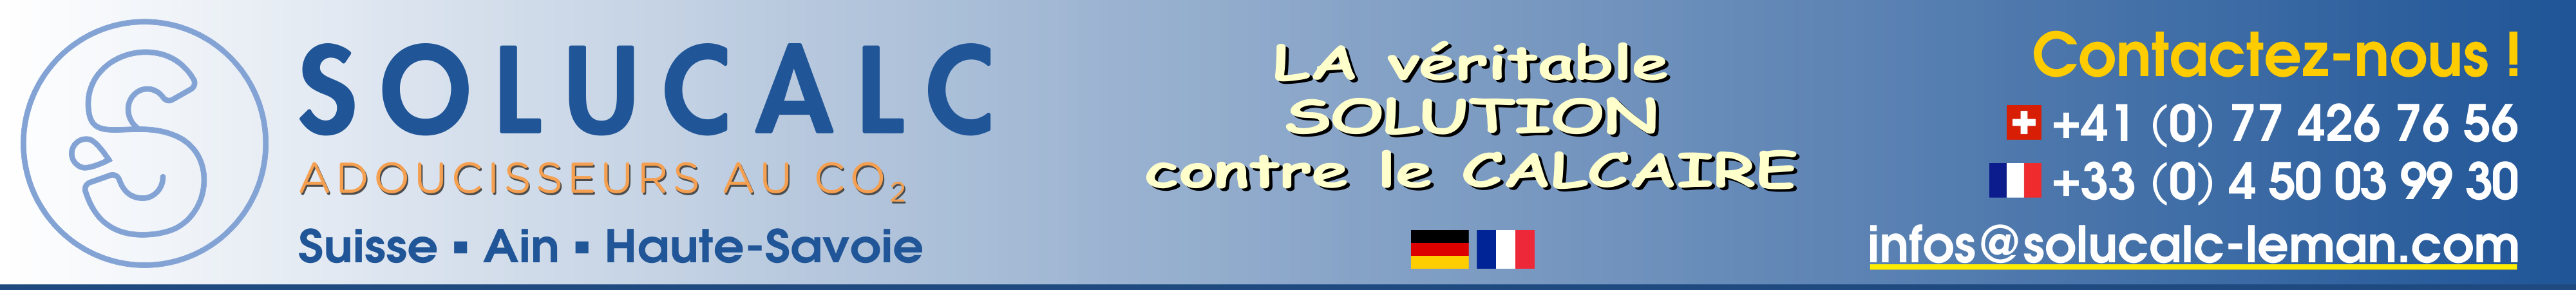 Adoucisseur d'eau au CO2 - SoluCalc - La vritable solution au calcaire 100% efficace - Suisse et Est-France